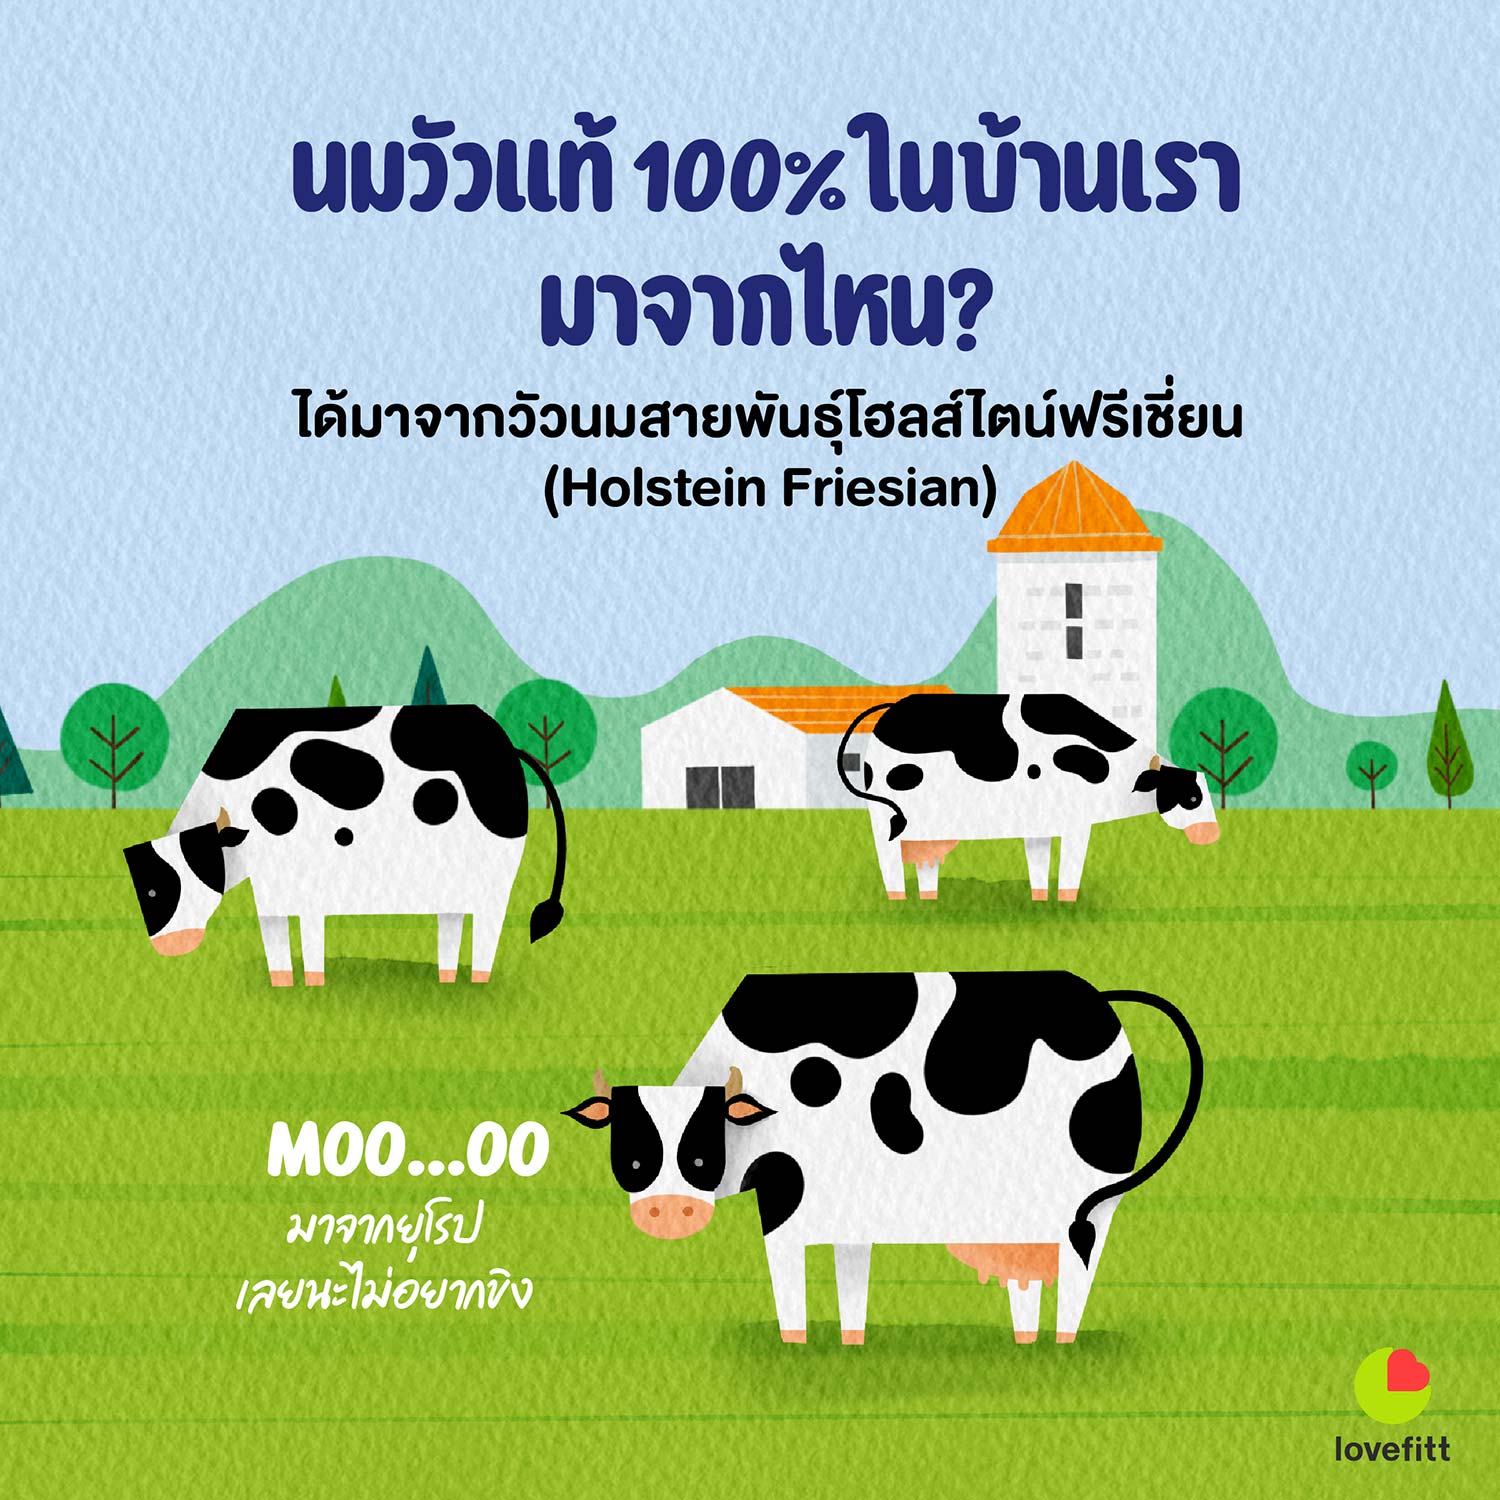 นมวัวในประเทศไทยได้มาจากวัวสายพันธุ์โฮลส์ไตน์ฟรีเชี่ยน